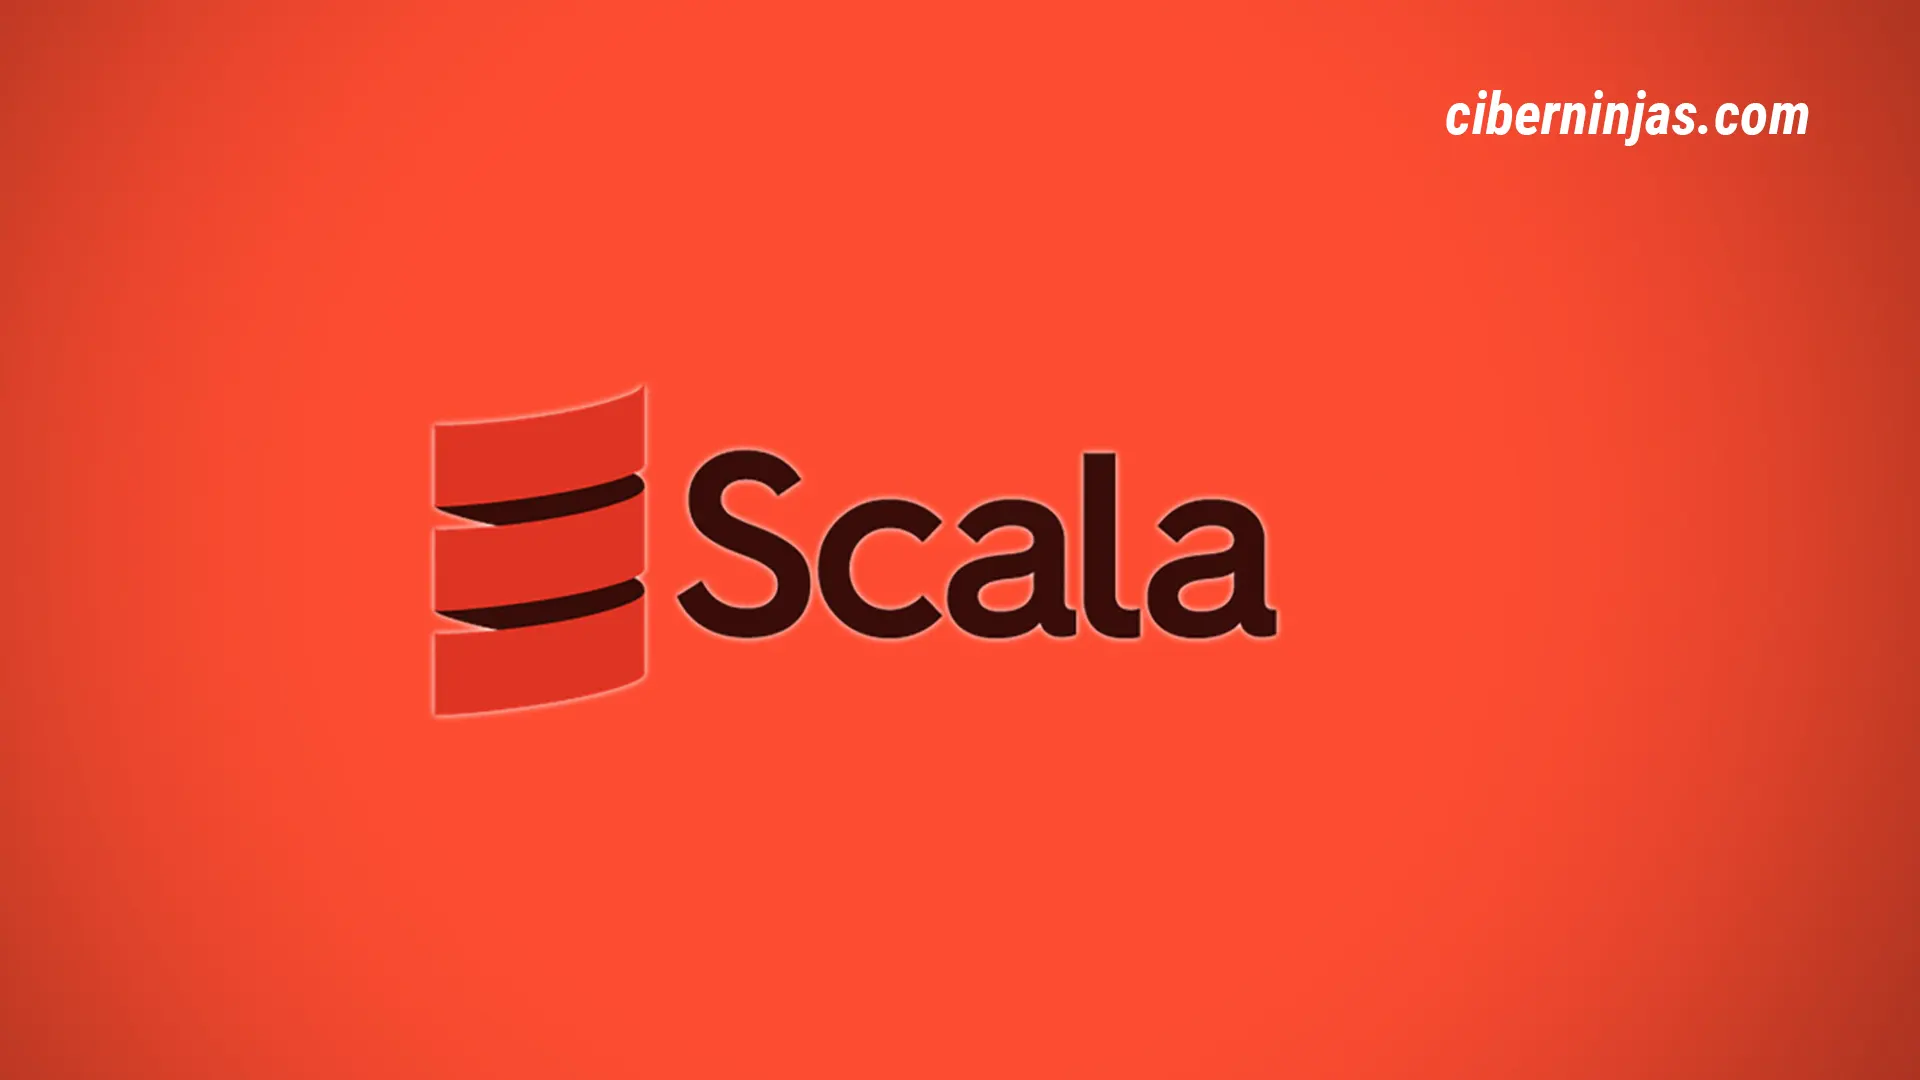 Scala 3: Lanzan una nueva versión del lenguaje de programación Scala